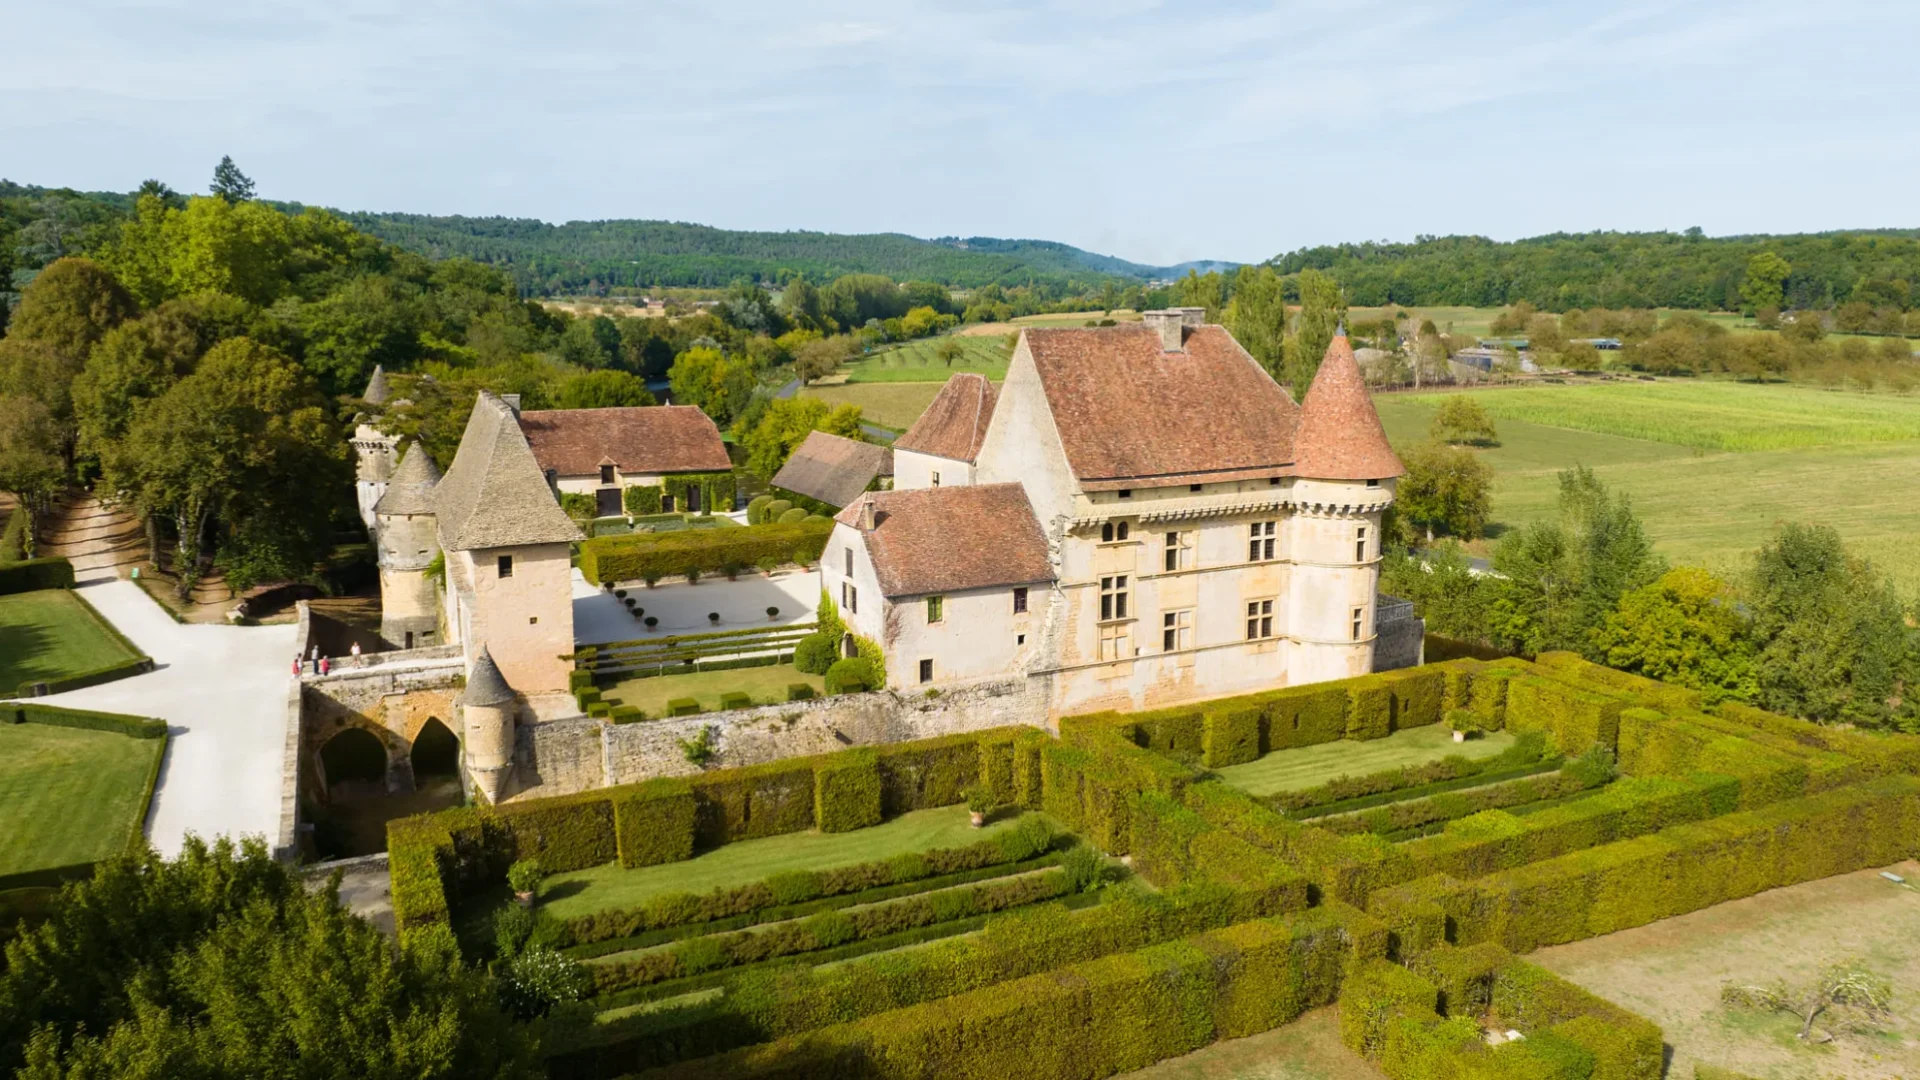 Chateau de Losse in the Vézère Valley, Dordogne